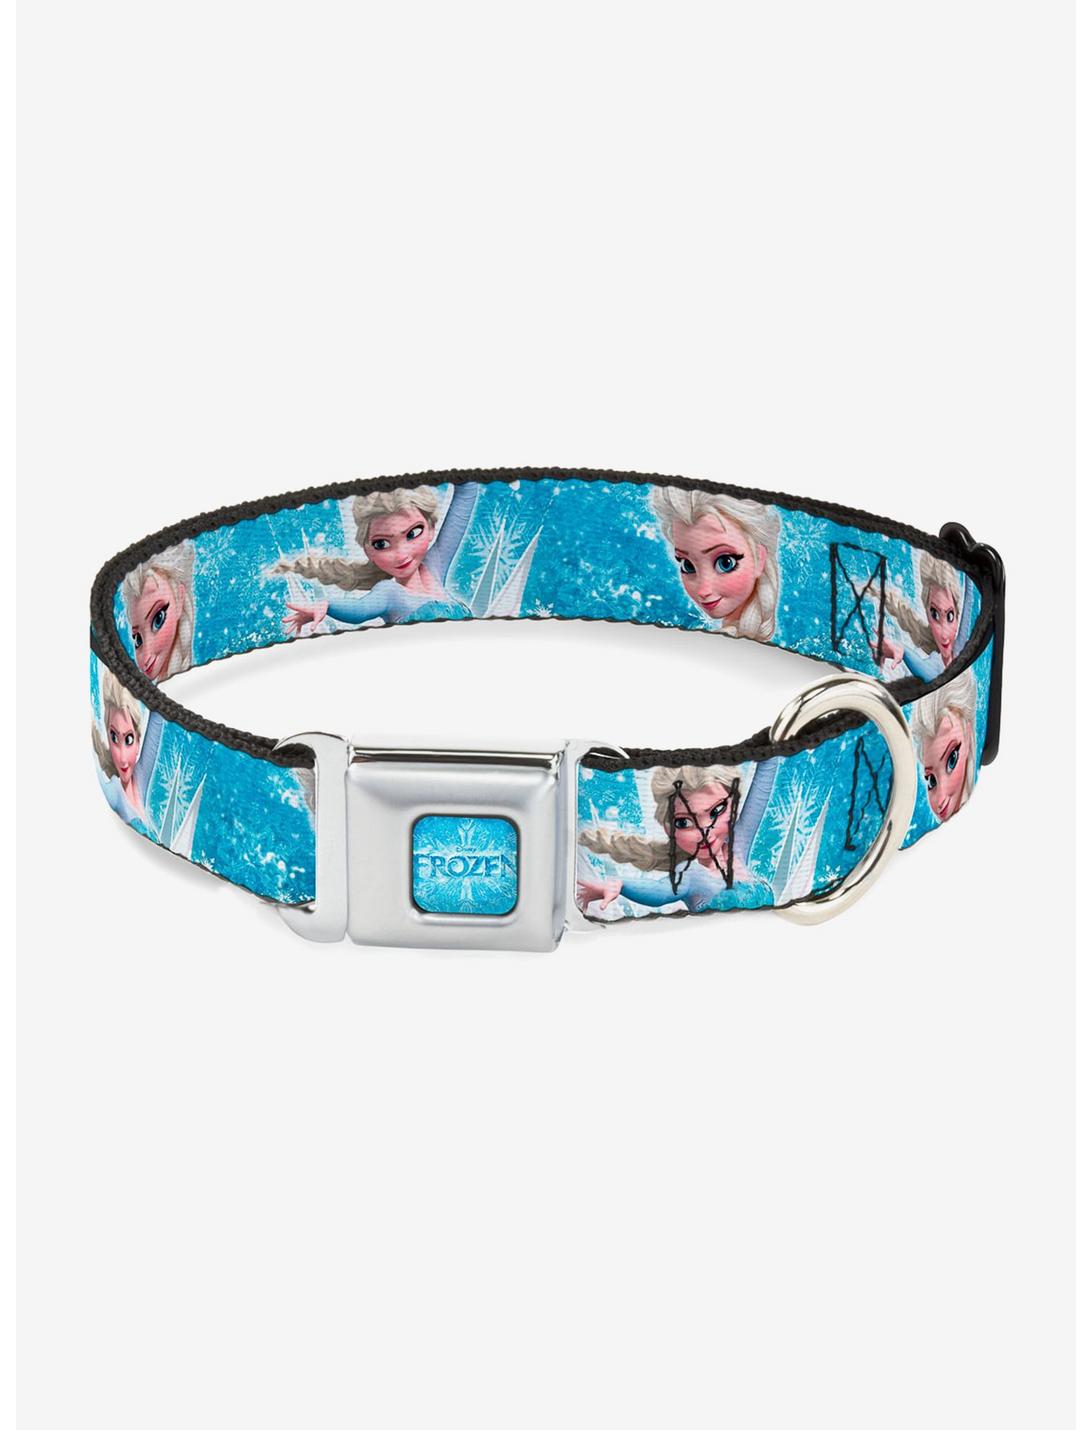 Disney Frozen Elsa Face Action Pose Seatbelt Buckle Pet Collar, BLUE, hi-res